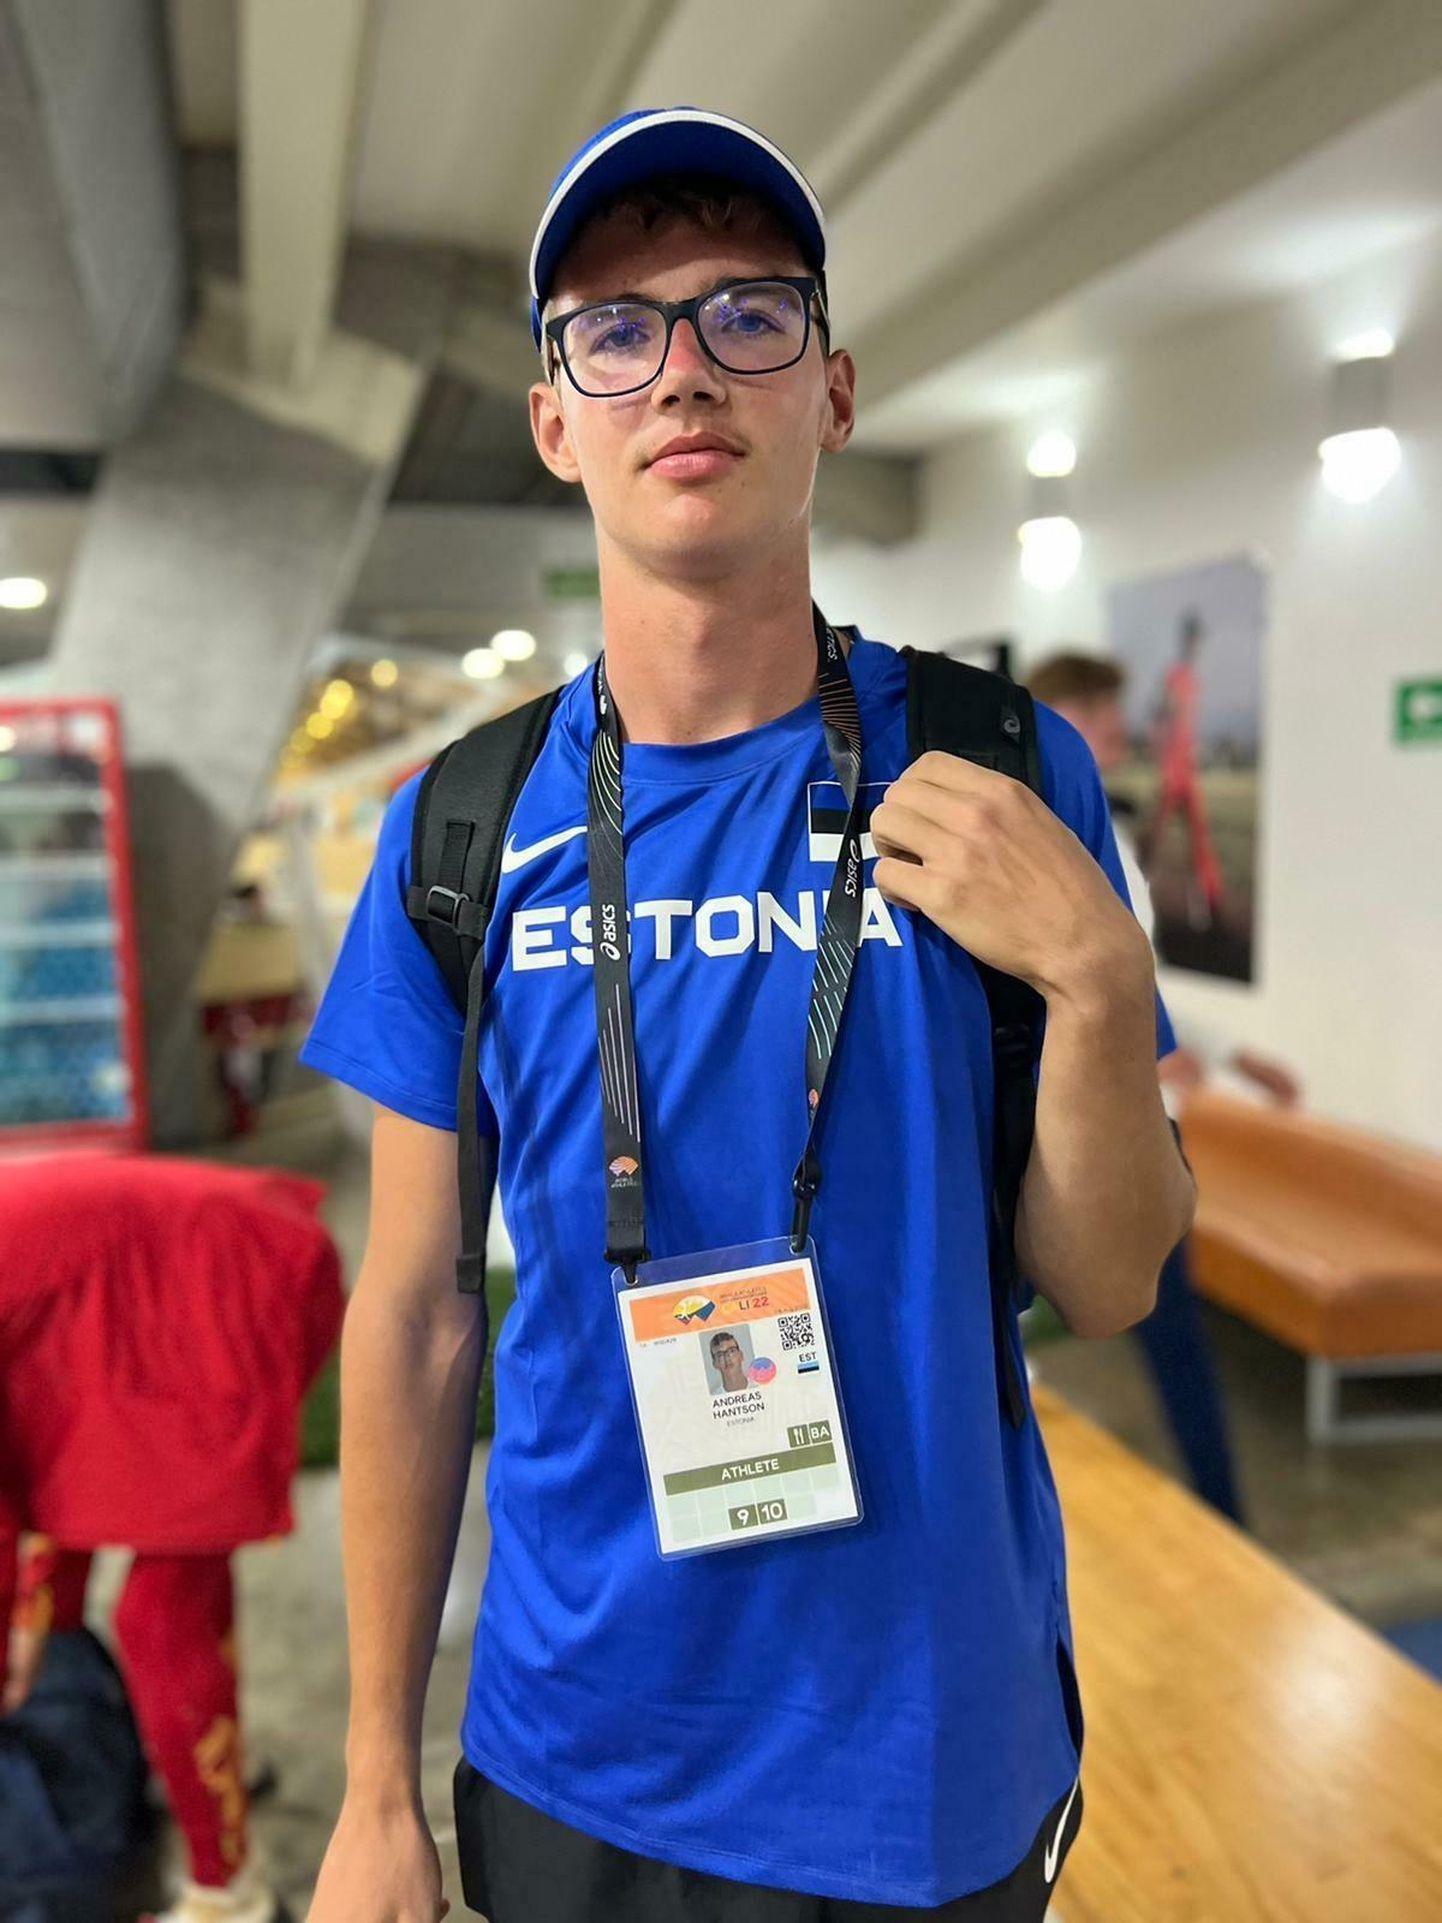 Viljandi vallast pärit Andreas Hantson pidi U-20 vanuseklassi maailmameistrivõistlustel mitmevõistluse põlvevigastuse tõttu katkestama, ent suurvõistlustelt kaasa toodud kogemused on tema sõnul võimsad.